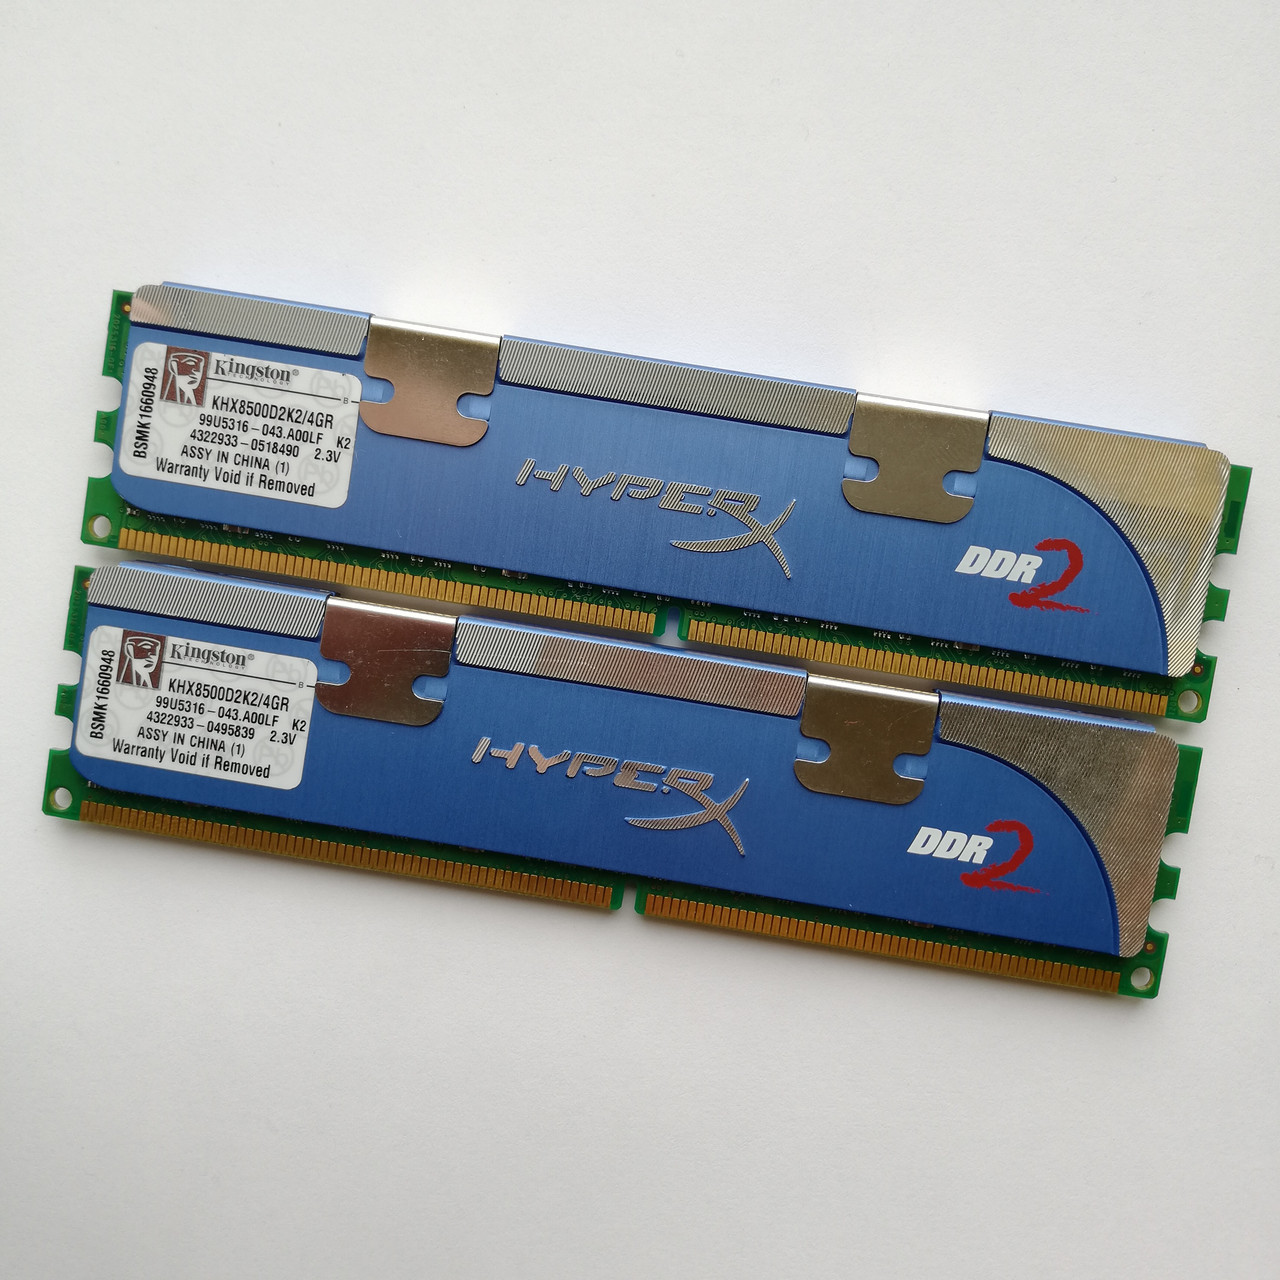 Ігрова оперативна пам'ять Kingston HyperX DDR2 4Gb (2Gb+2Gb) 1066MHz 8500U CL5 (KHX8500D2K2/4GR) Б/В, фото 1